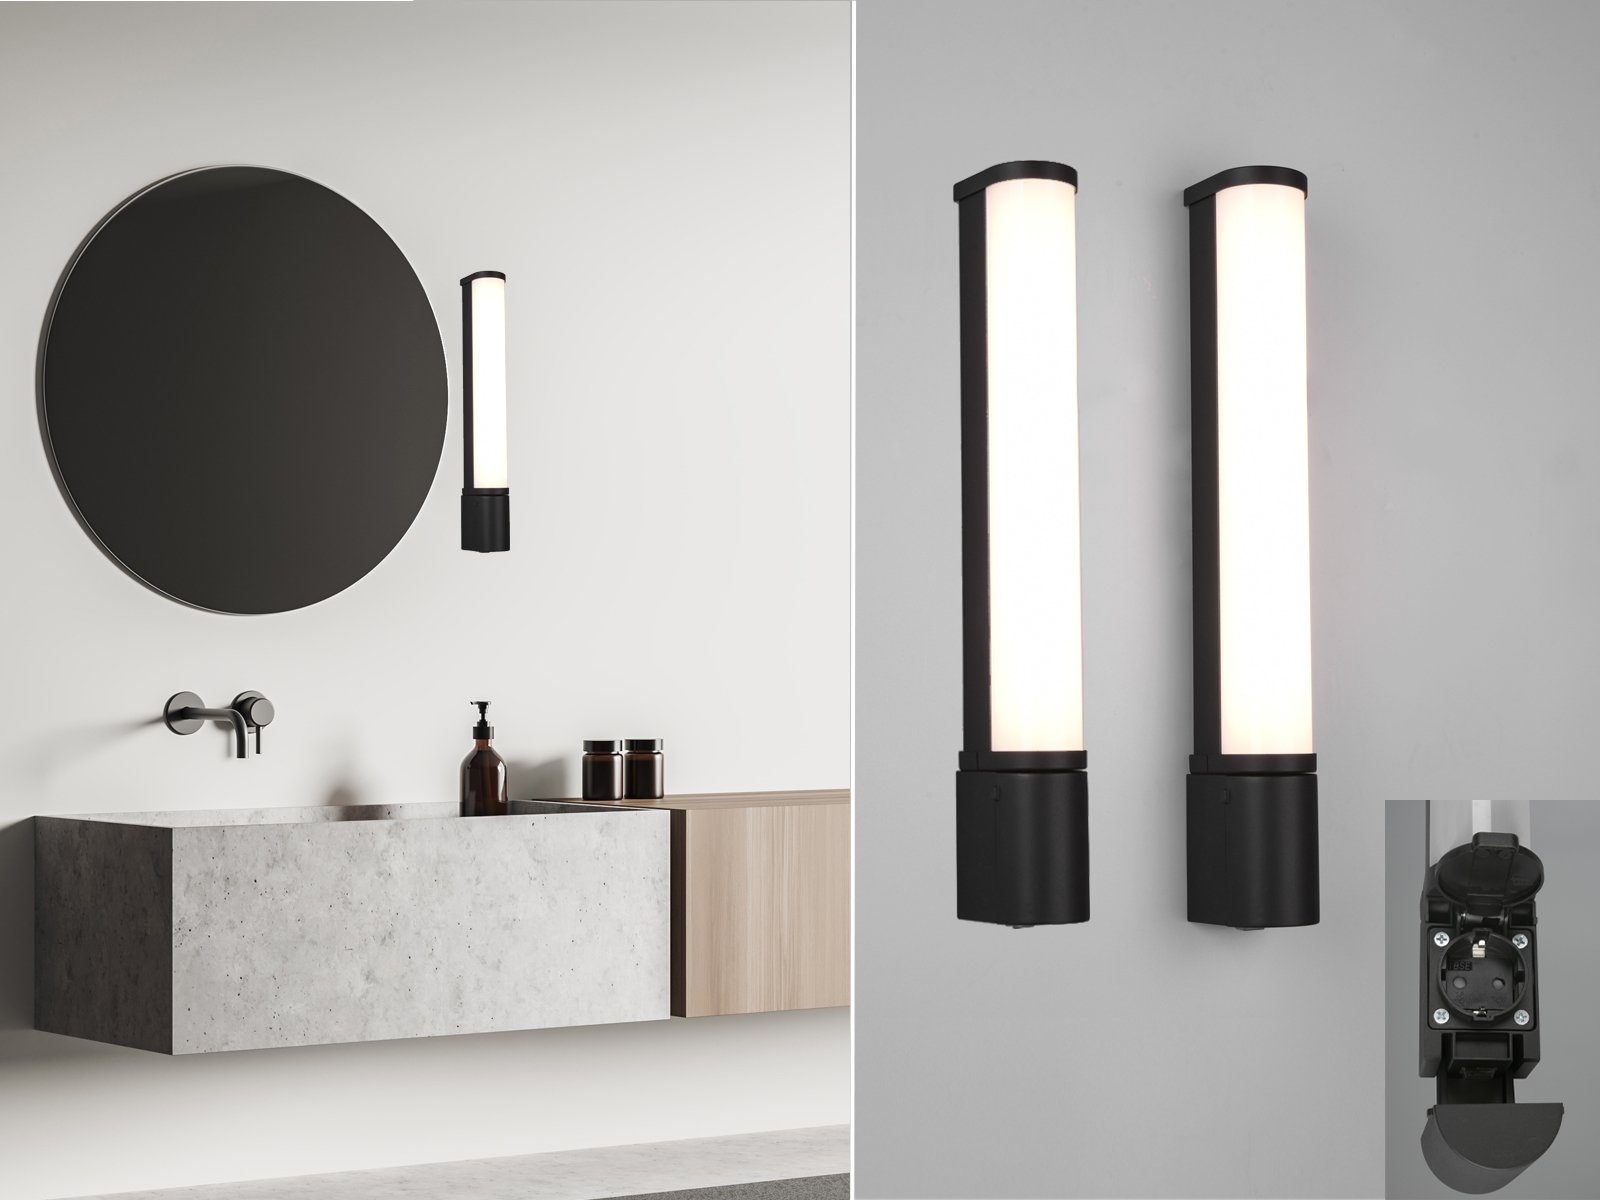 Perfektes Licht und gutes Design: Spiegelbeleuchtung im Badezimmer